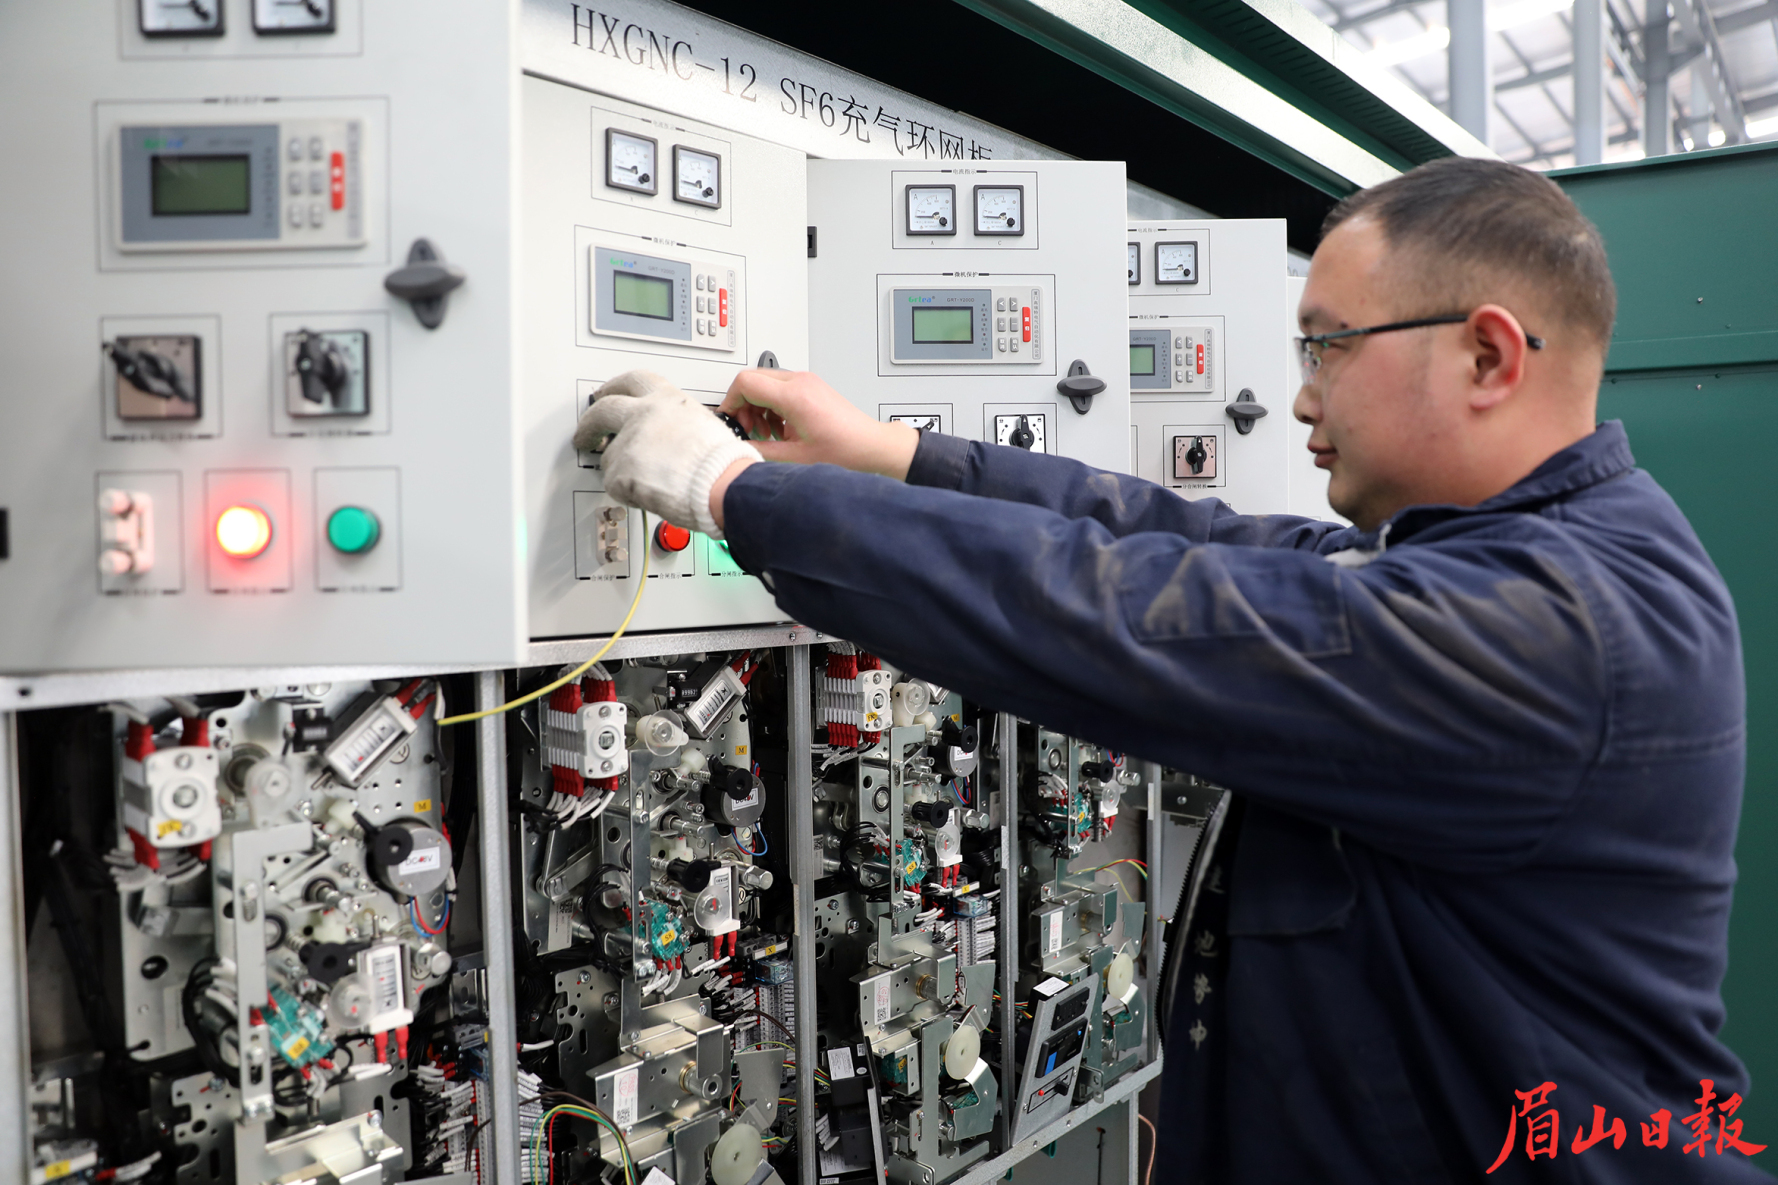 四川诺尔电气有限公司工人正在测试新产品。